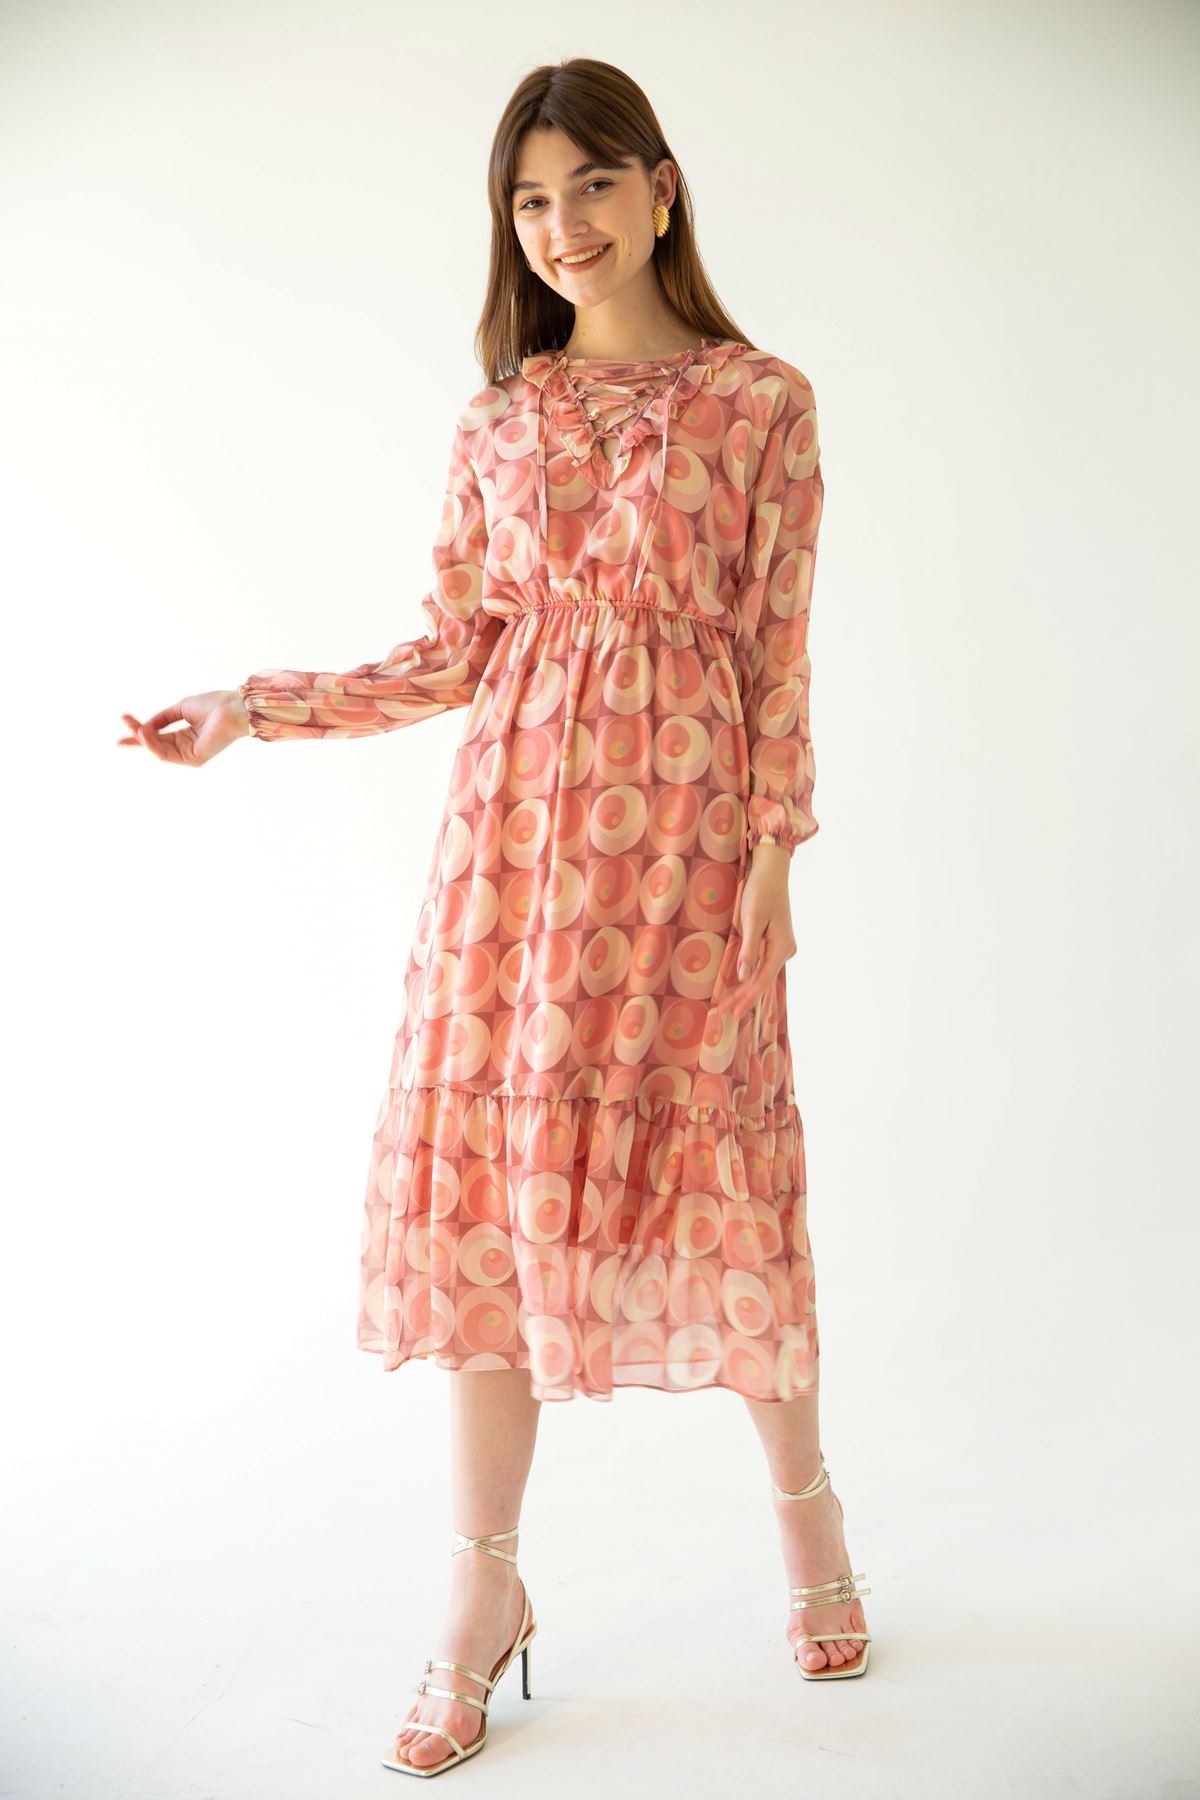 Şifon Kumaş Bağlamalı Yaka Geometrik Desen Kadın Elbise-Pembe